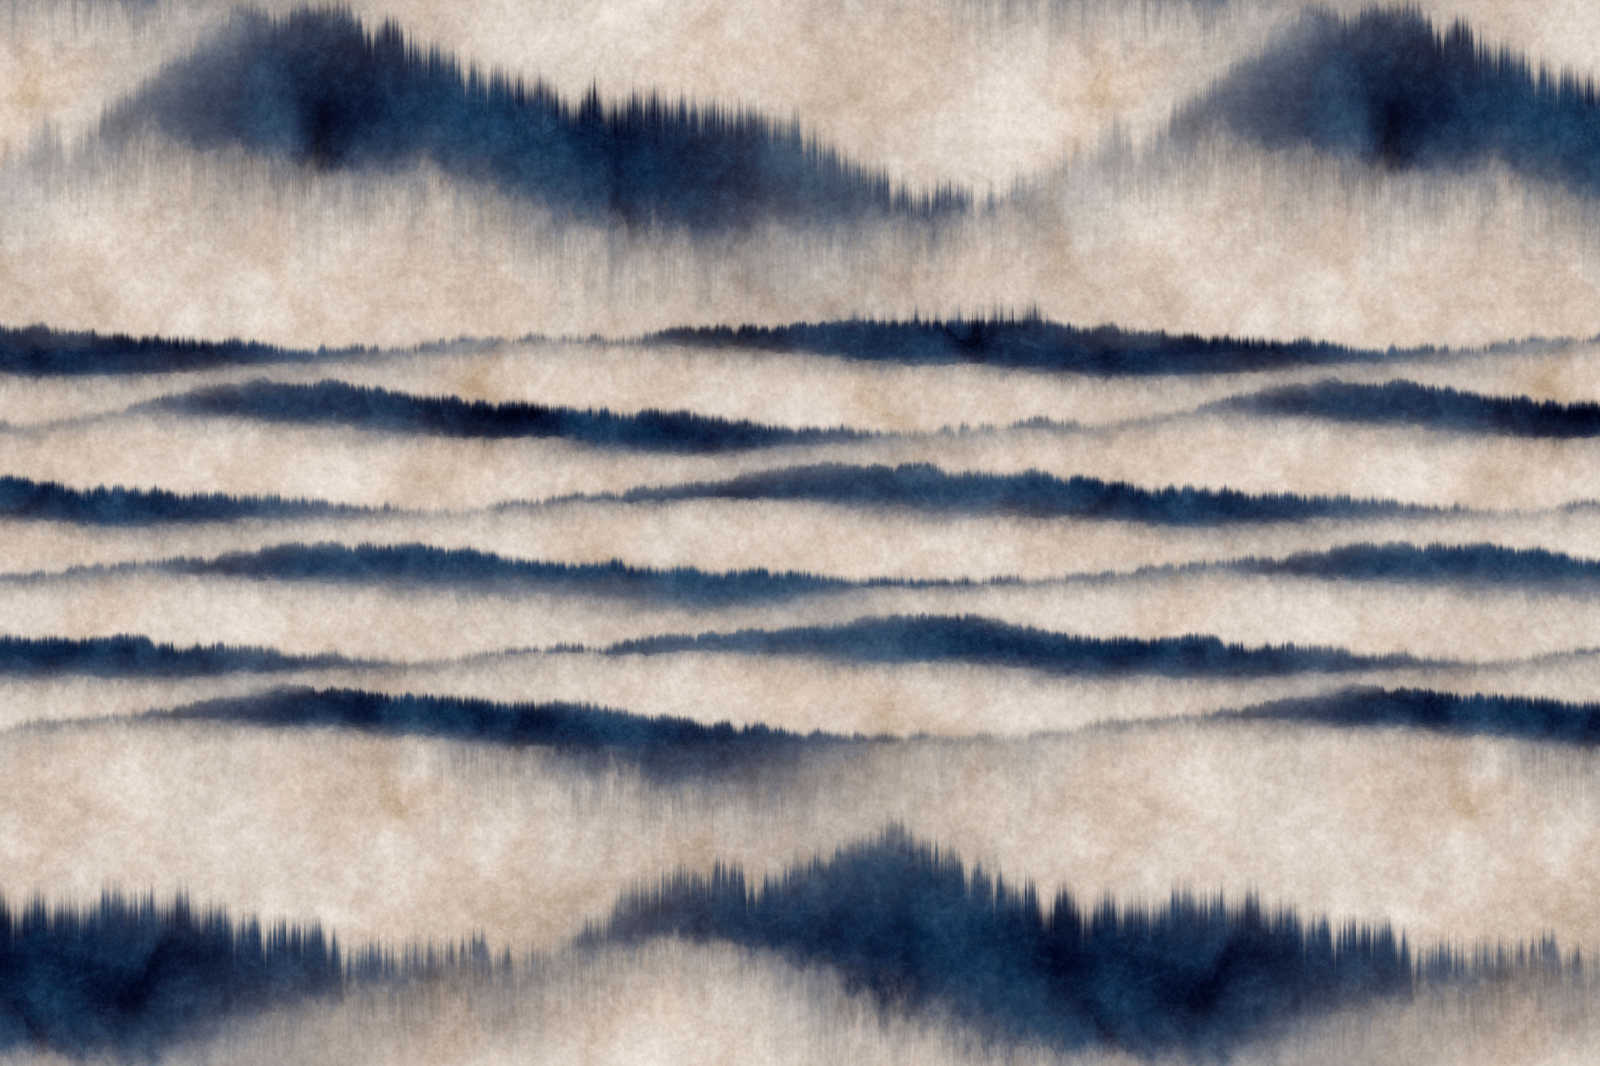             Quadro su tela con motivo astratto di onde, blu, bianco - 0,90 m x 0,60 m
        